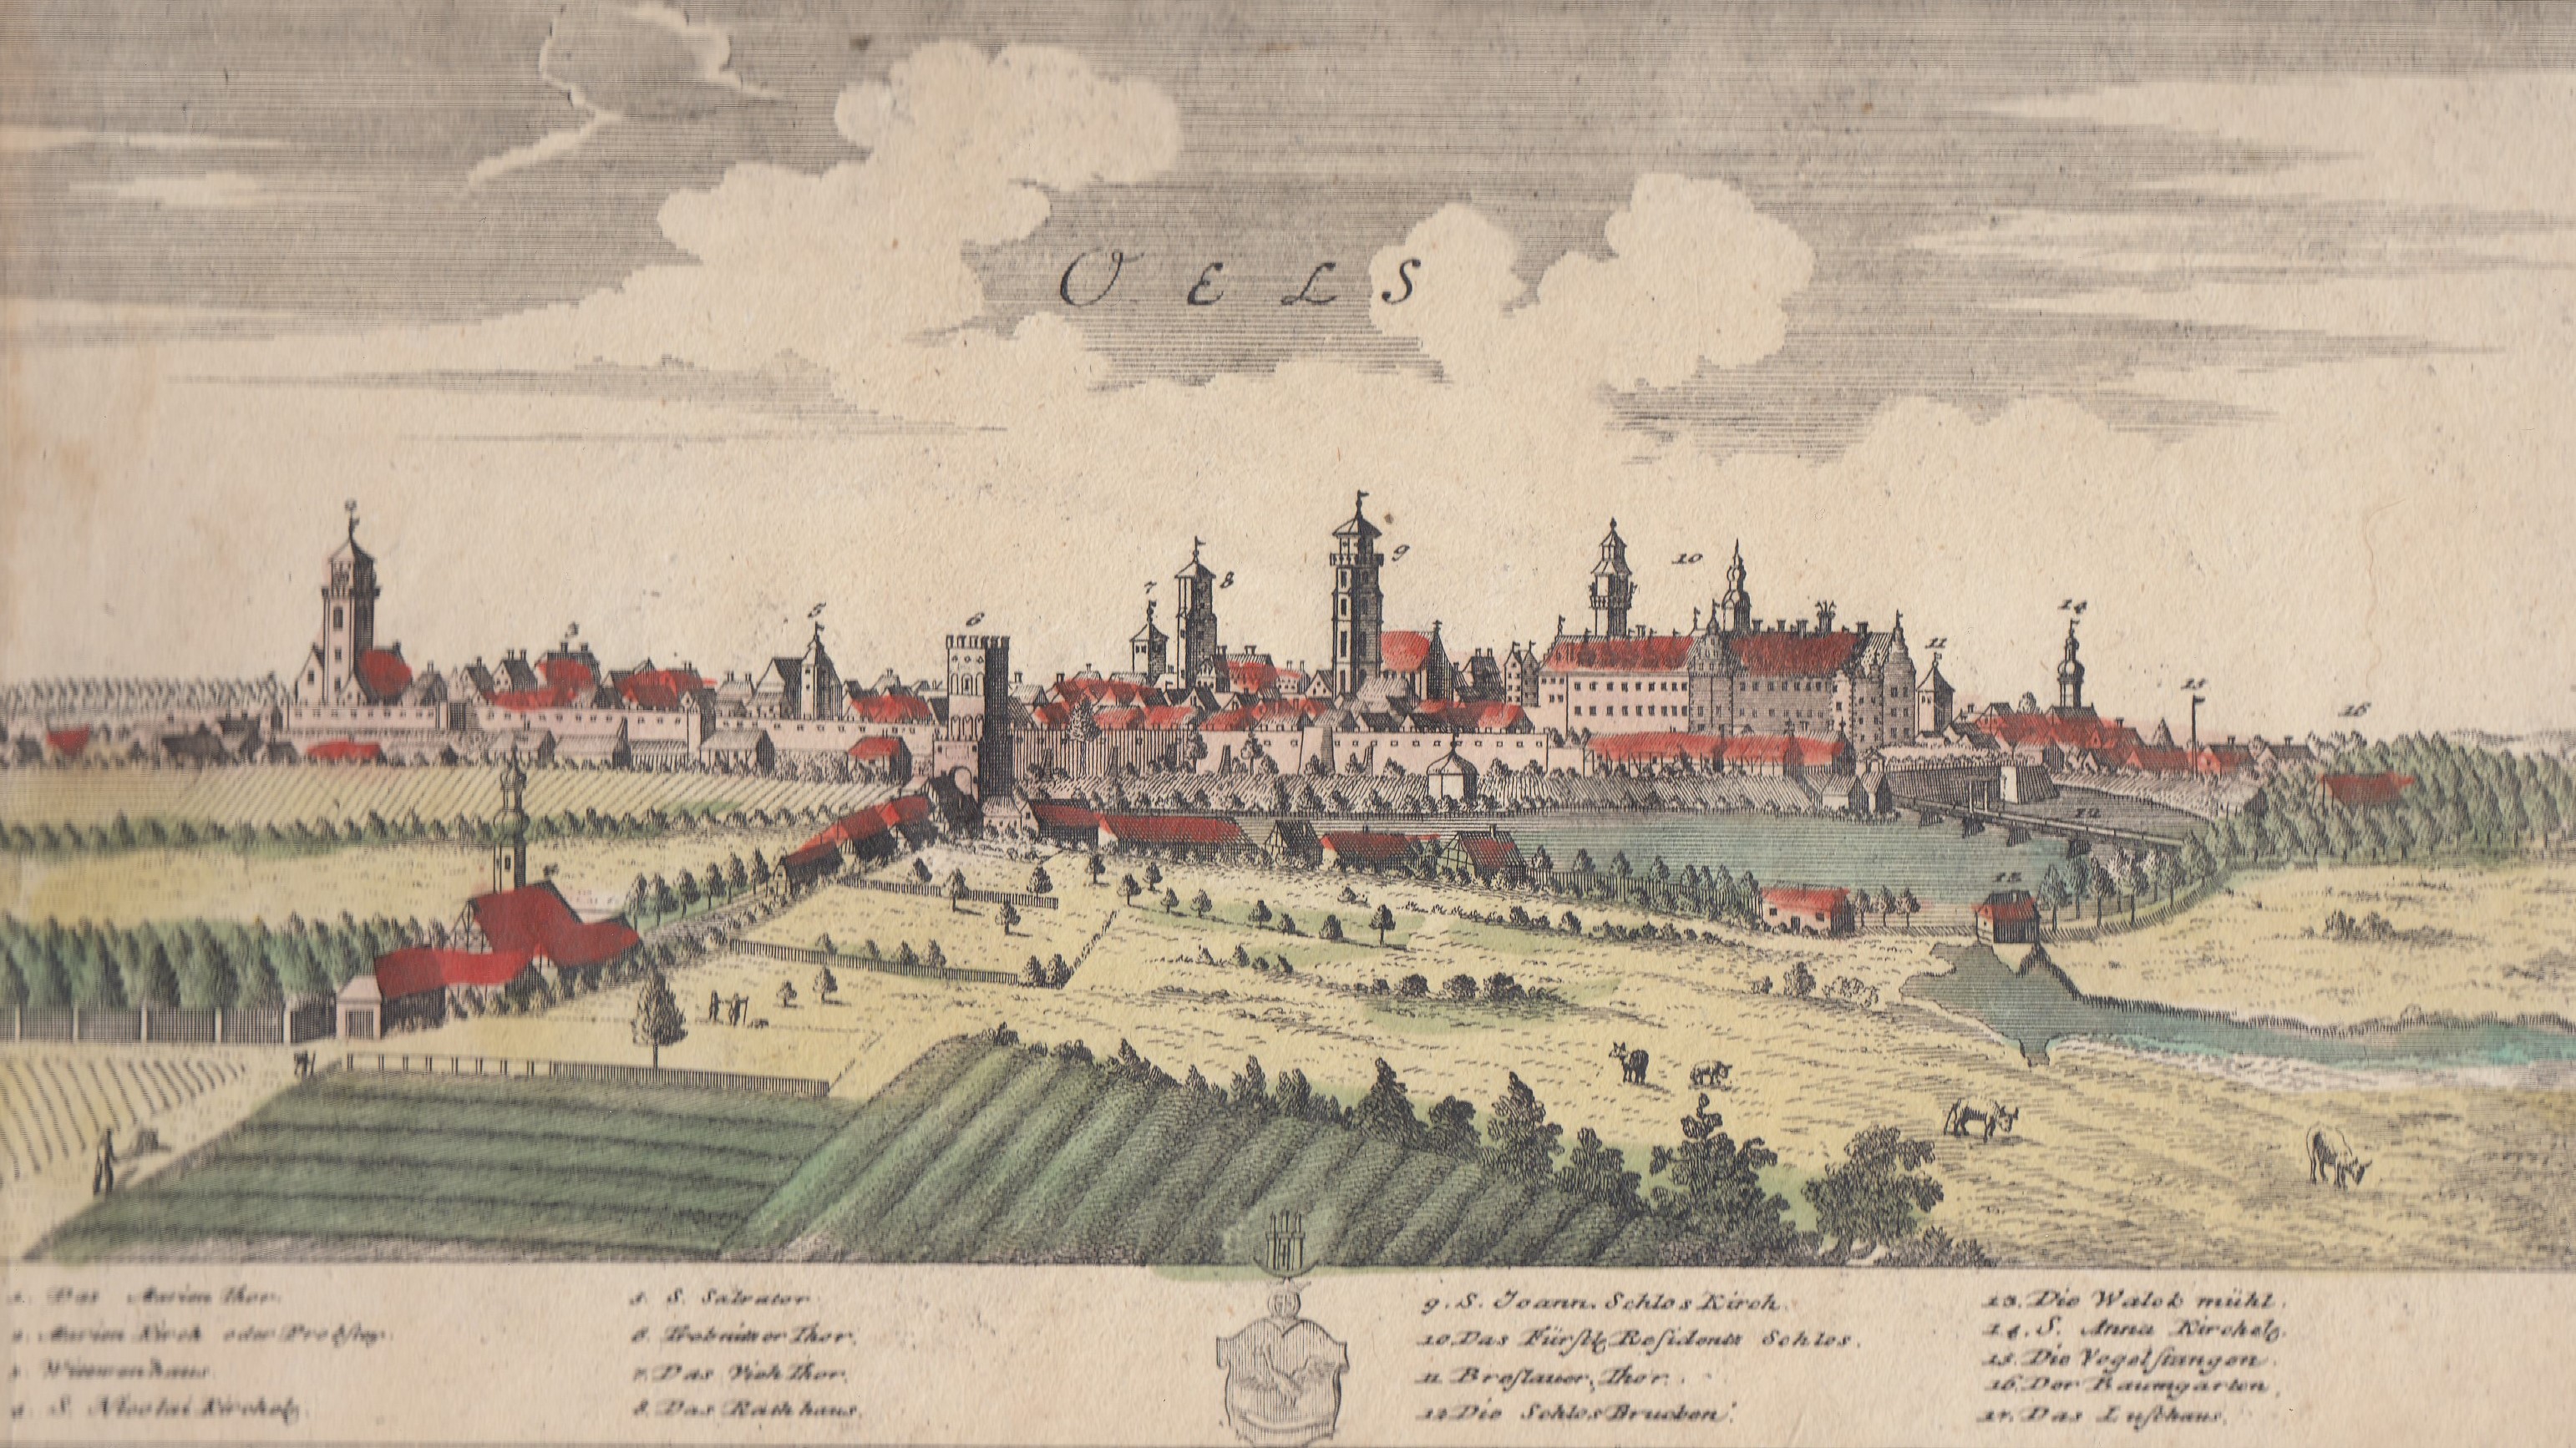 Oels 1740